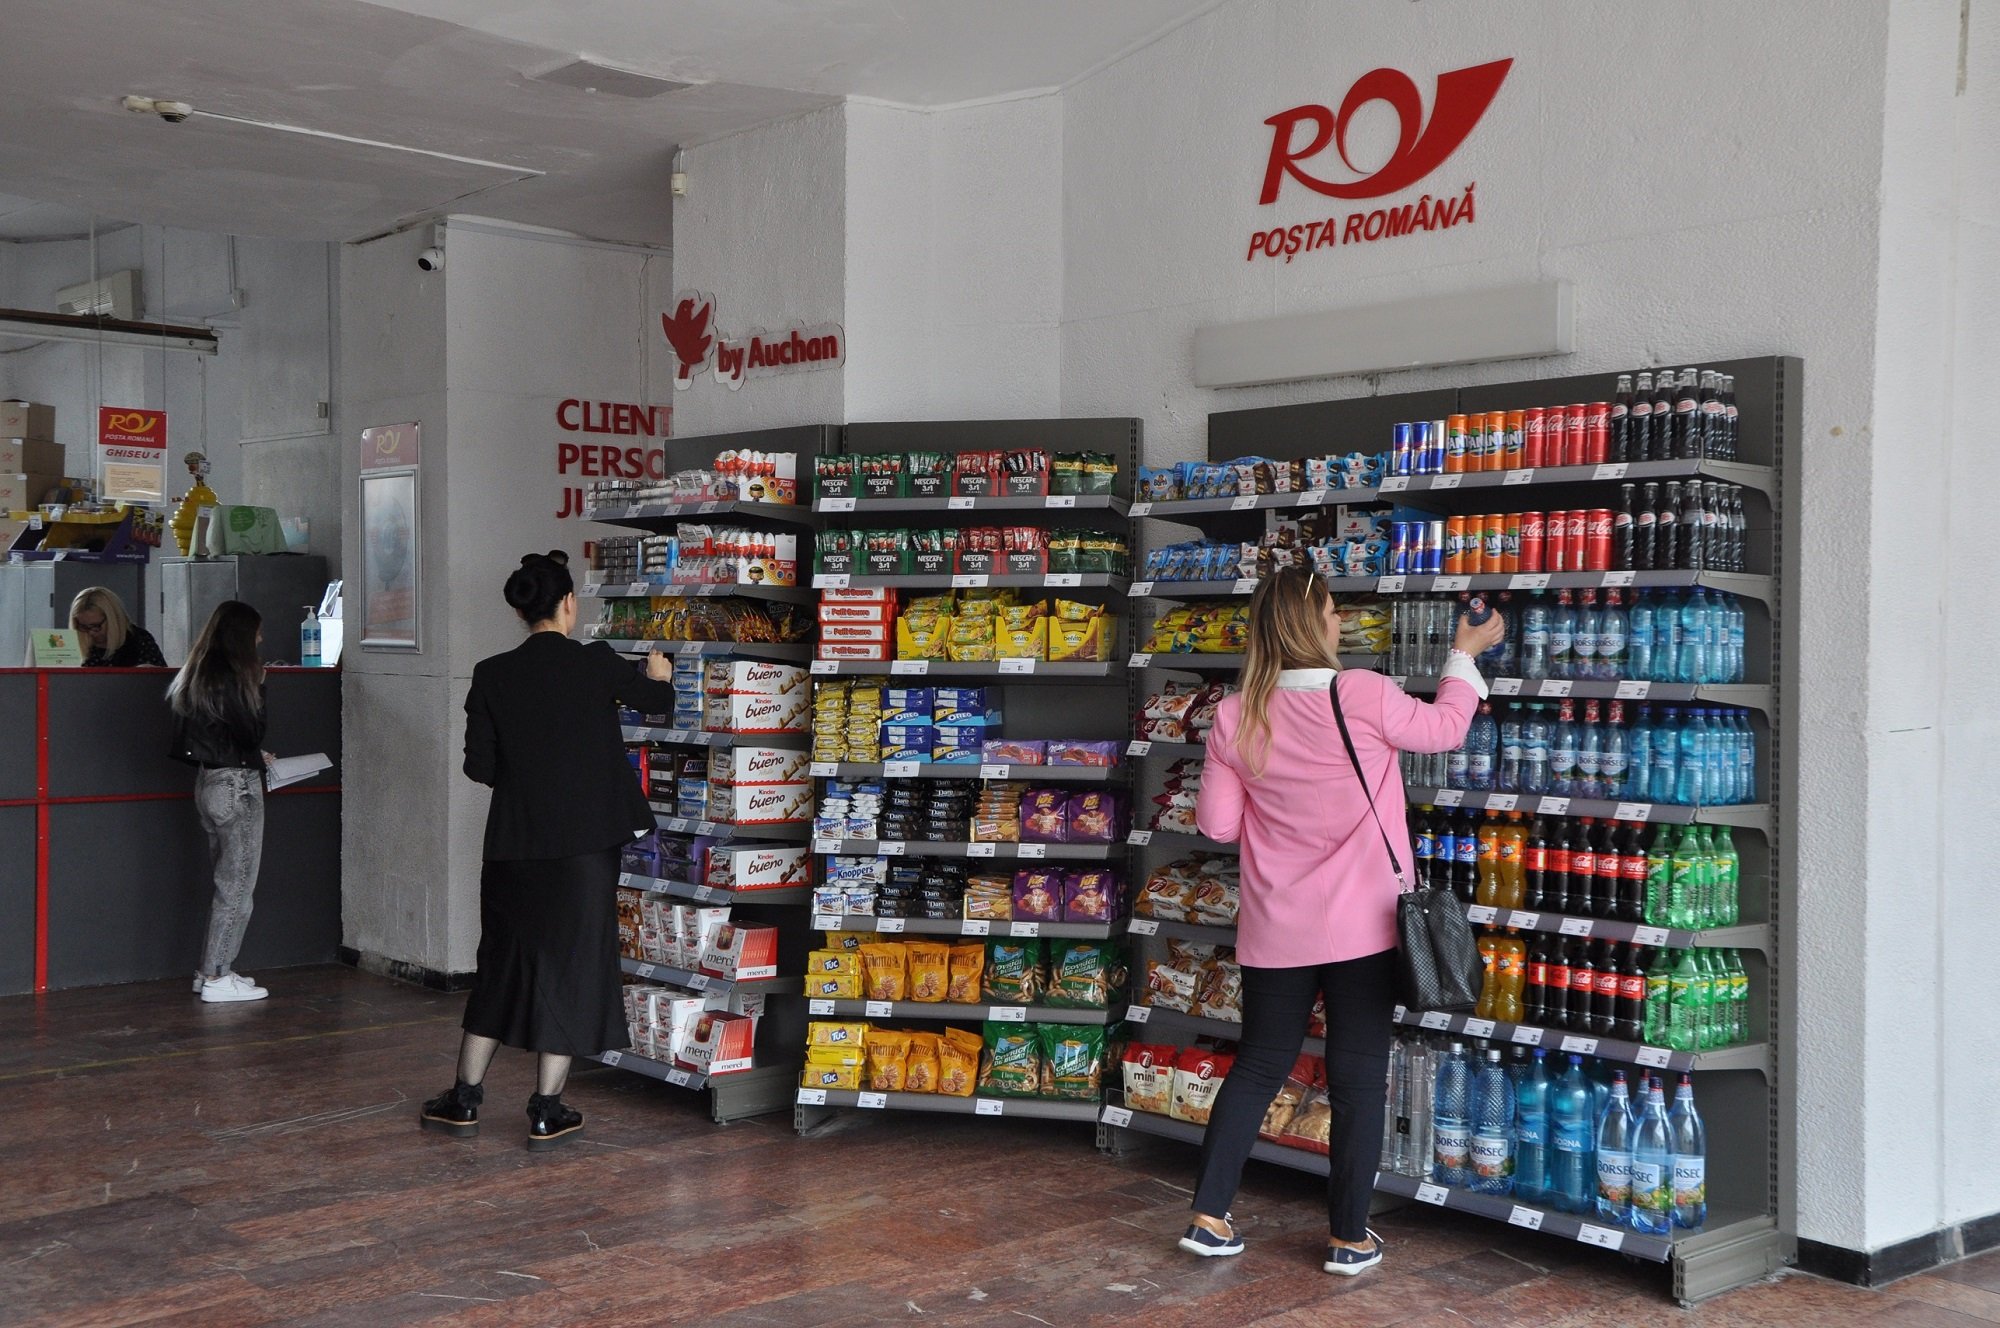  Poșta Română va vinde produse alimentare în oficiile poștale